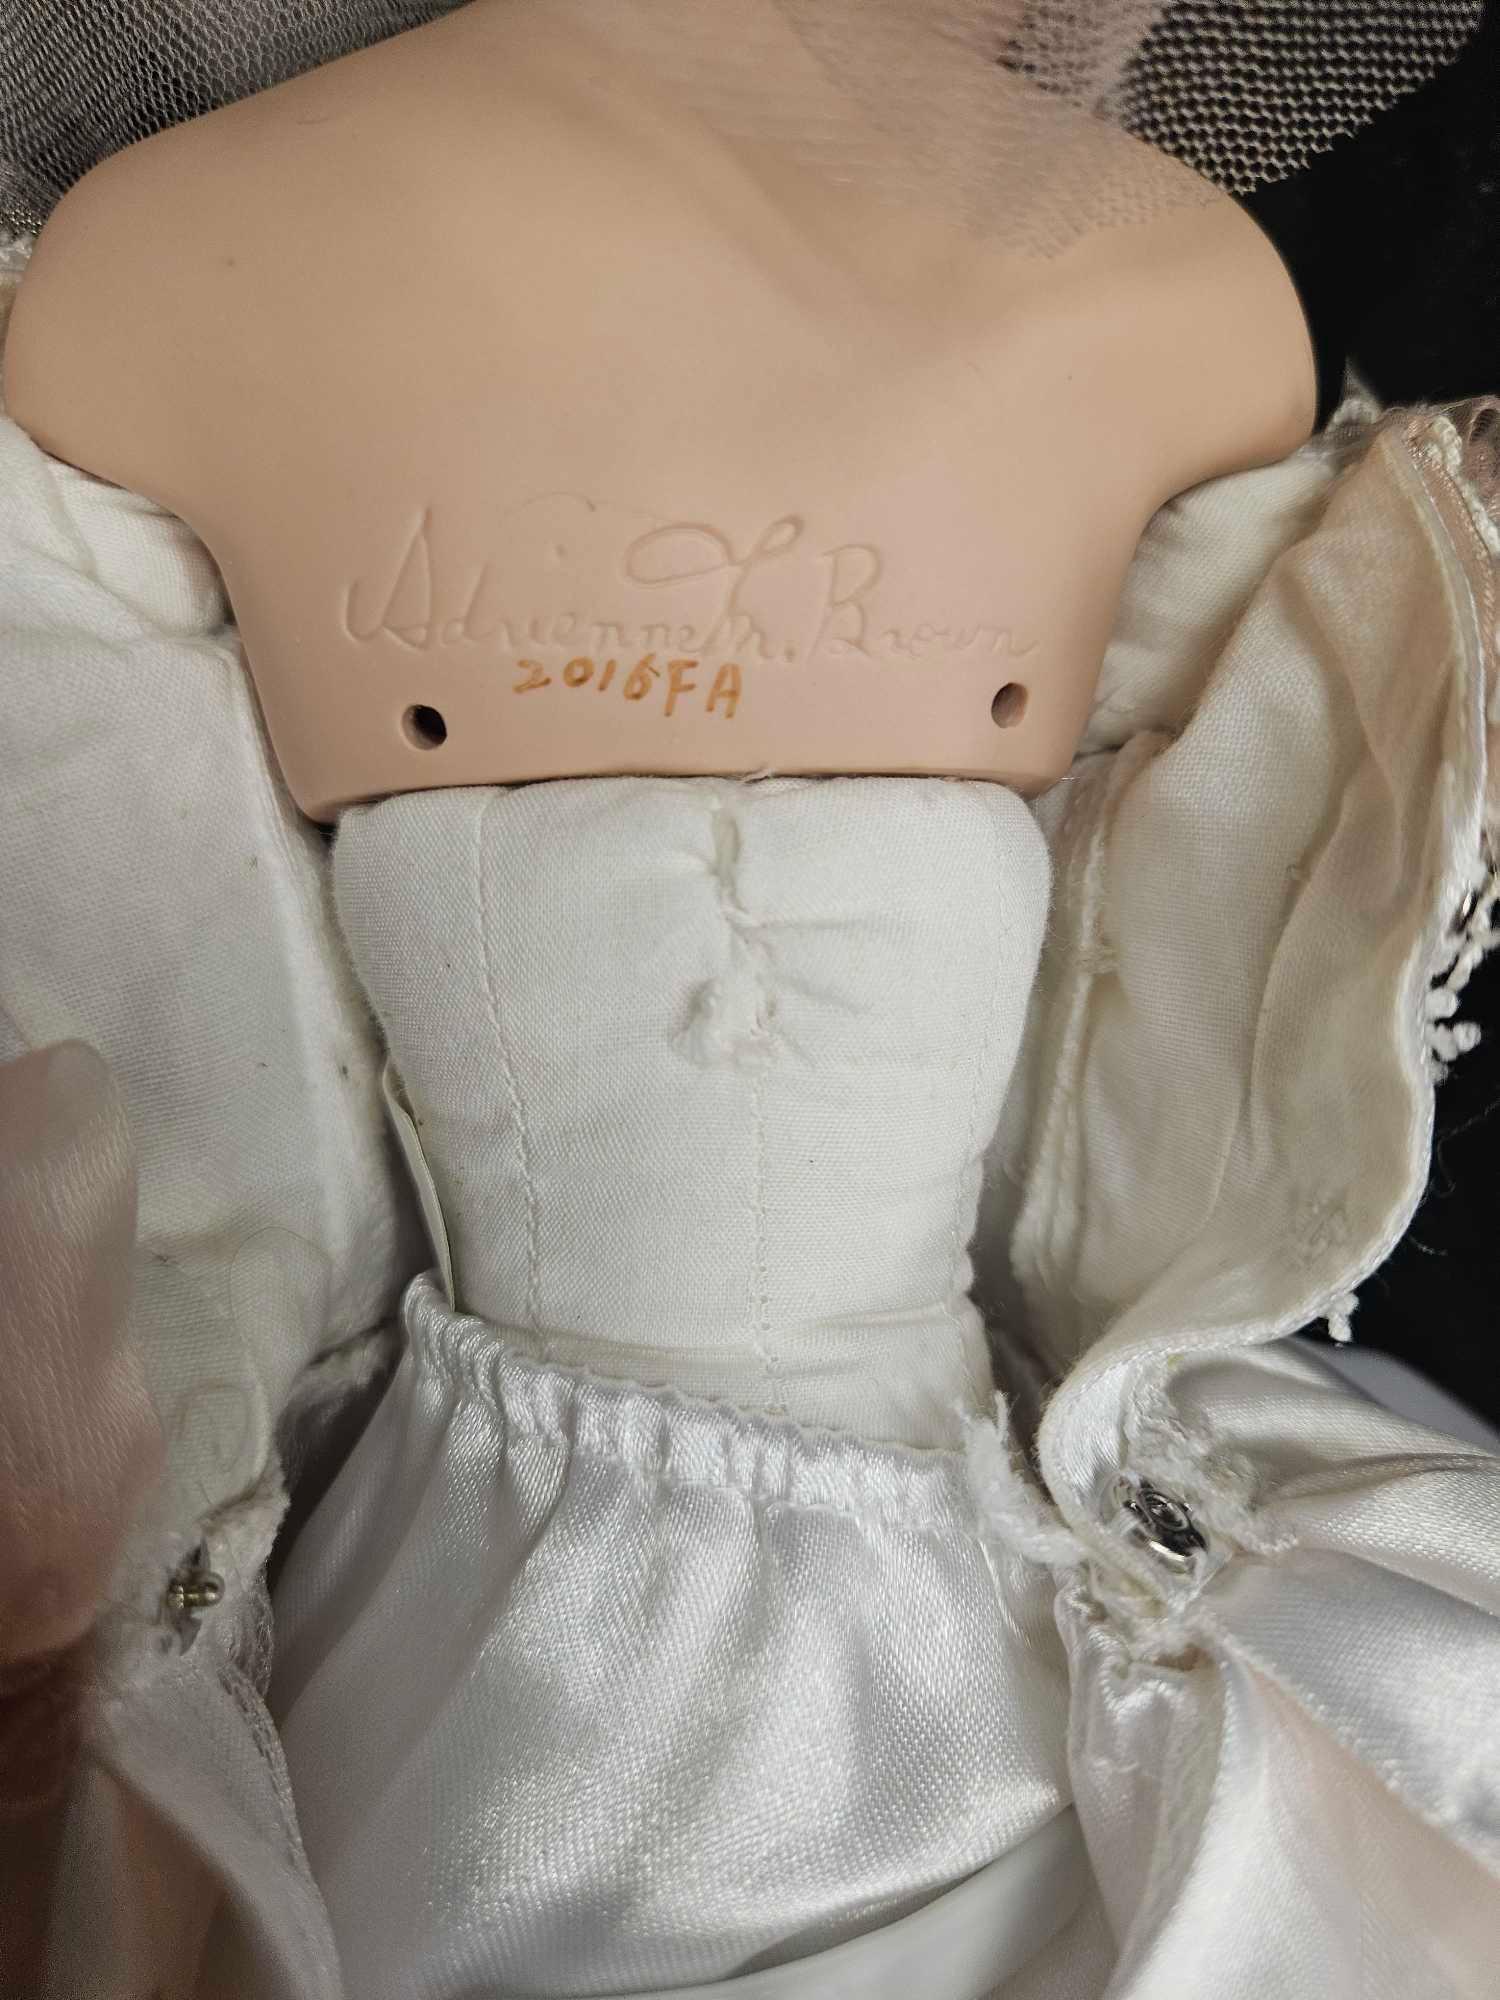 Vintage Ashton Drake Galleries Paulette Bride Porcelain Doll 20in